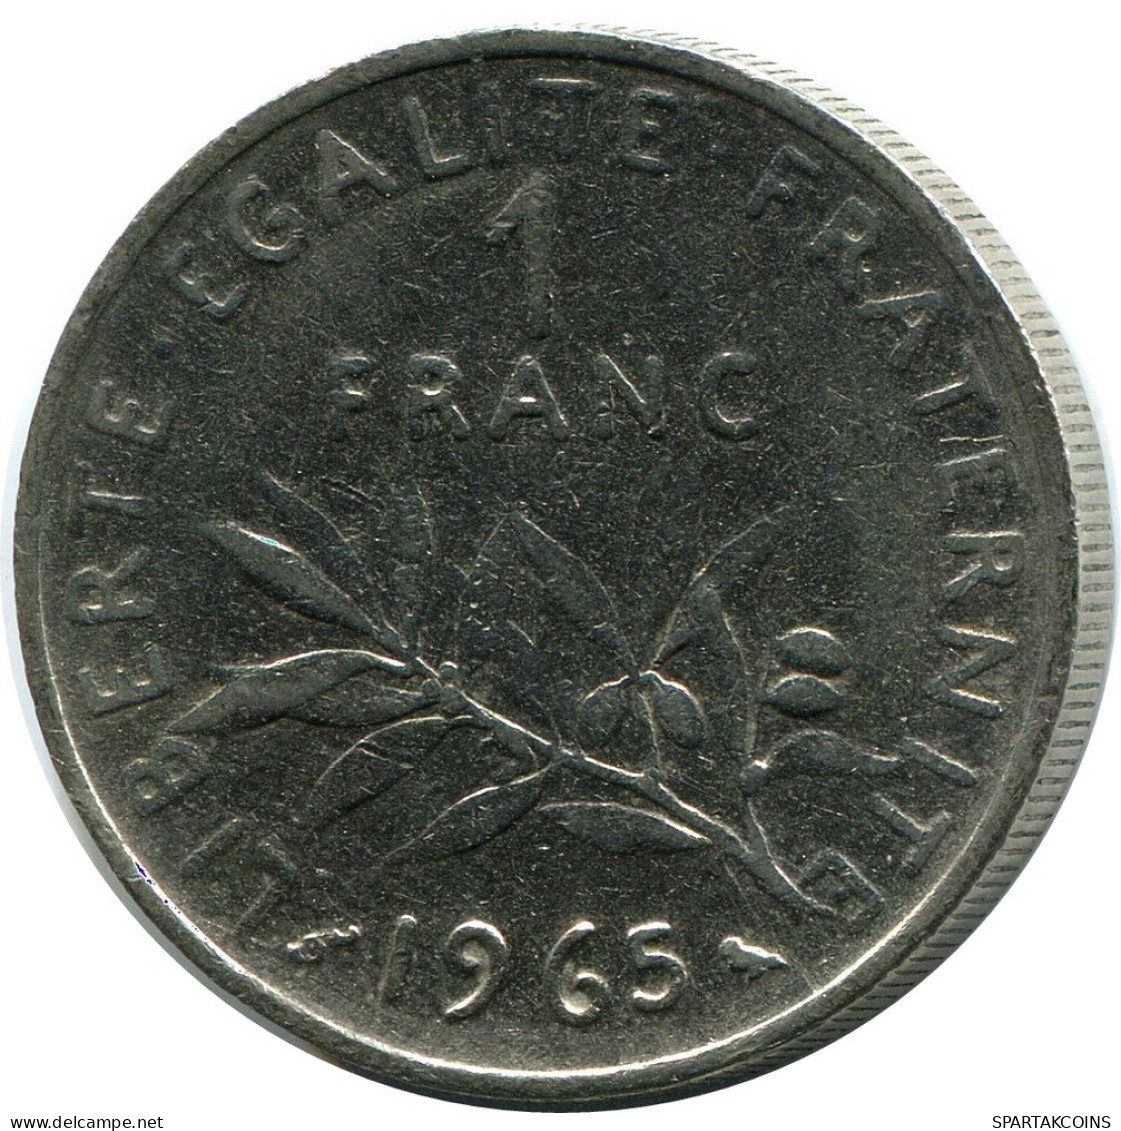 1 FRANC 1965 FRANCE Coin #AZ415.U.A - 1 Franc